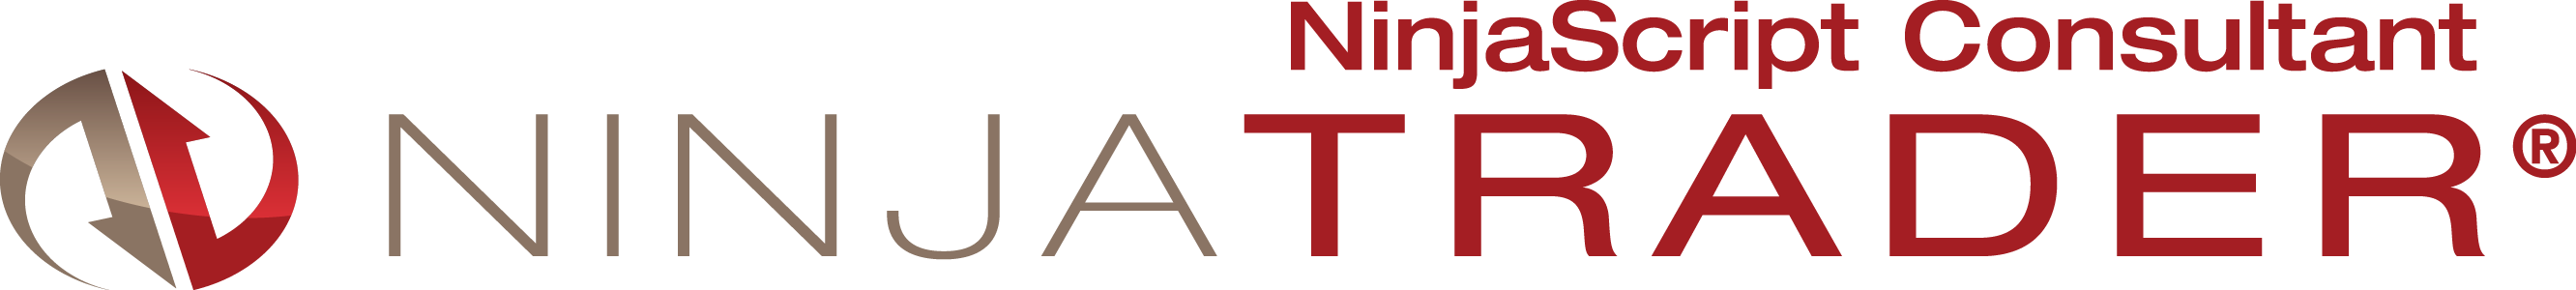 NinjaScript_Consultant_Logo.png